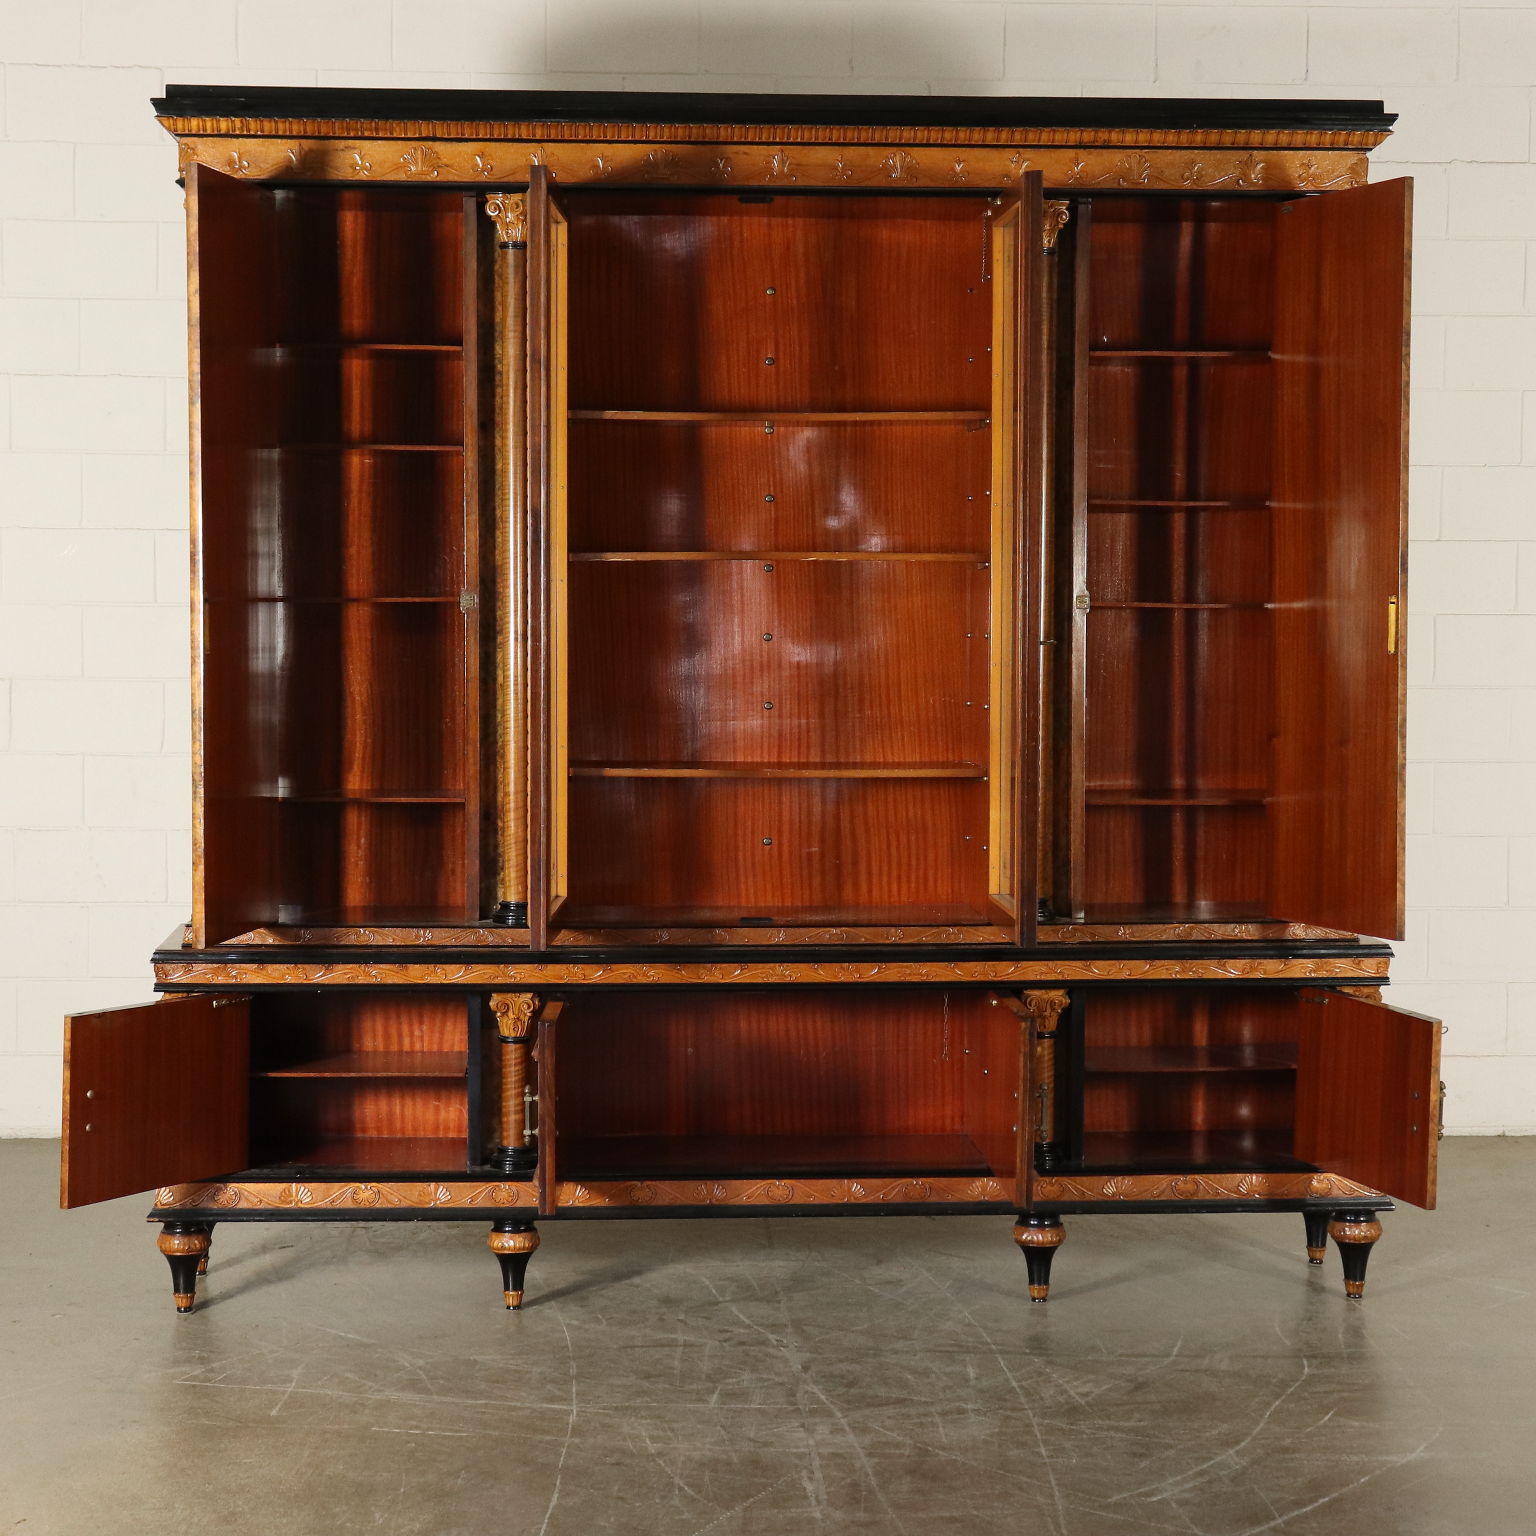 Complete Study Furniture Art Deco Italy th Century Arredi Completi Bottega Del 900 Dimanoinmano It